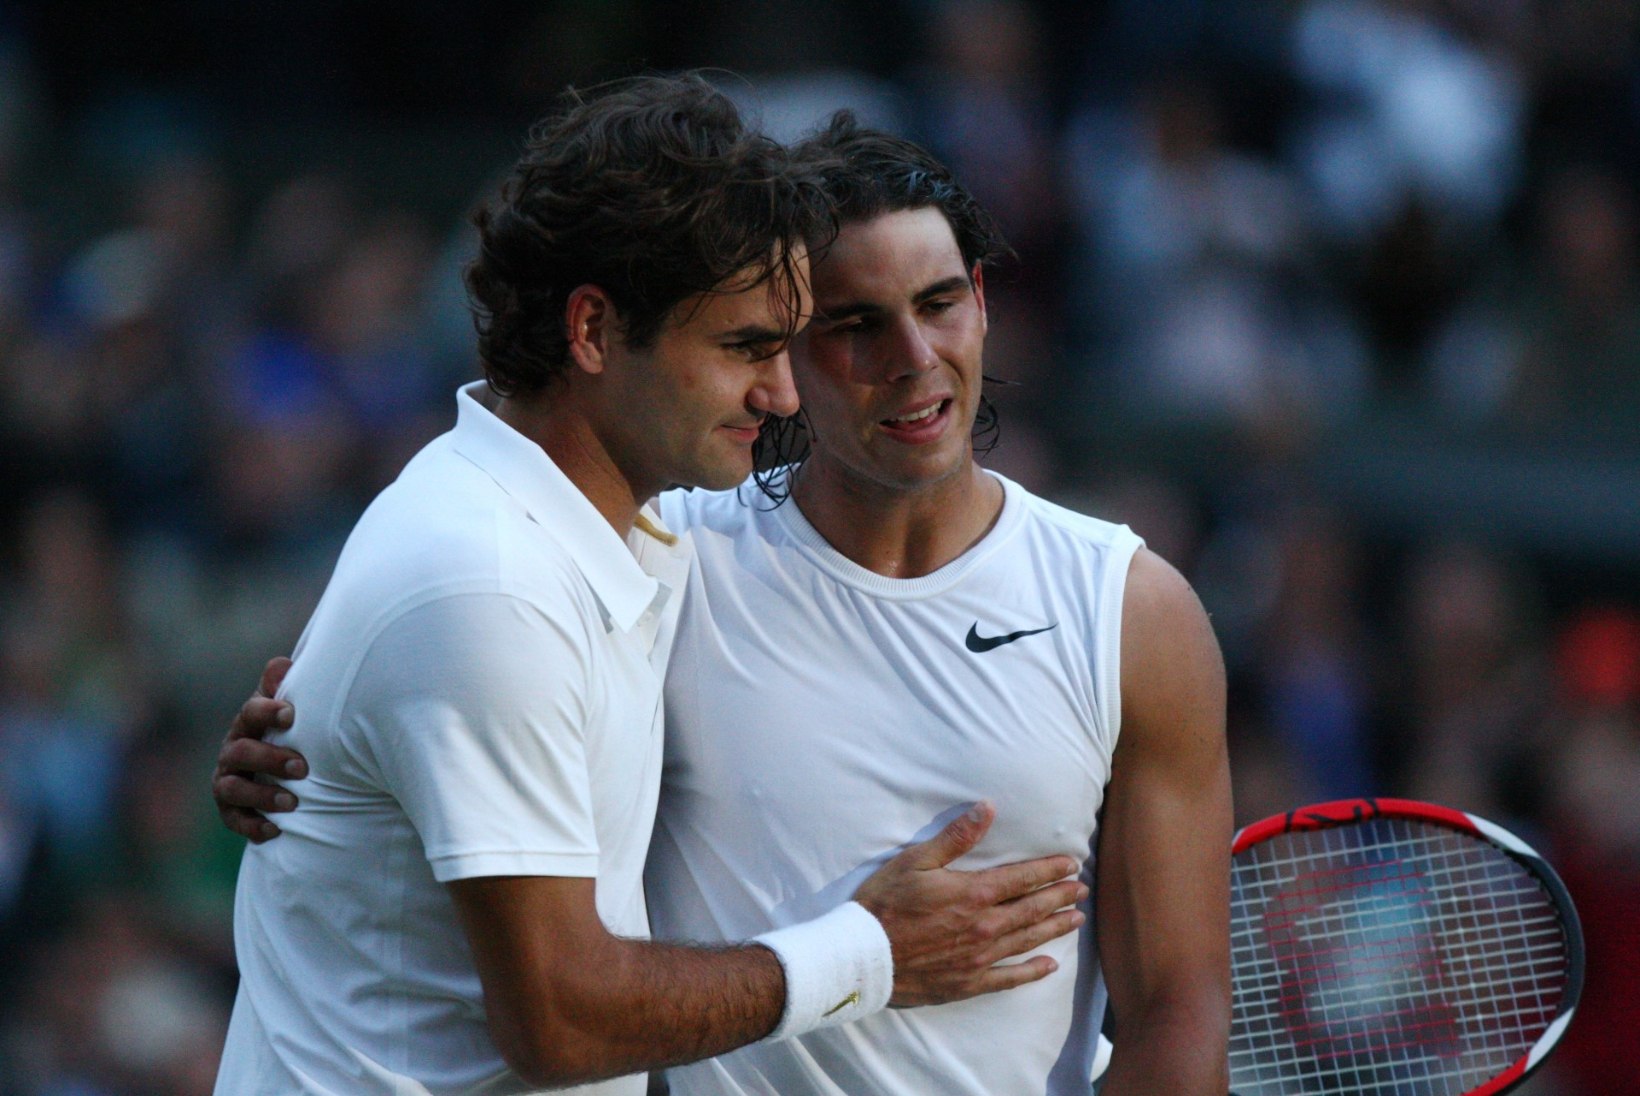 TOP 5 | Federeri ja Djokovici eilne lahing oli tenniseajaloo üks vingemaid matše